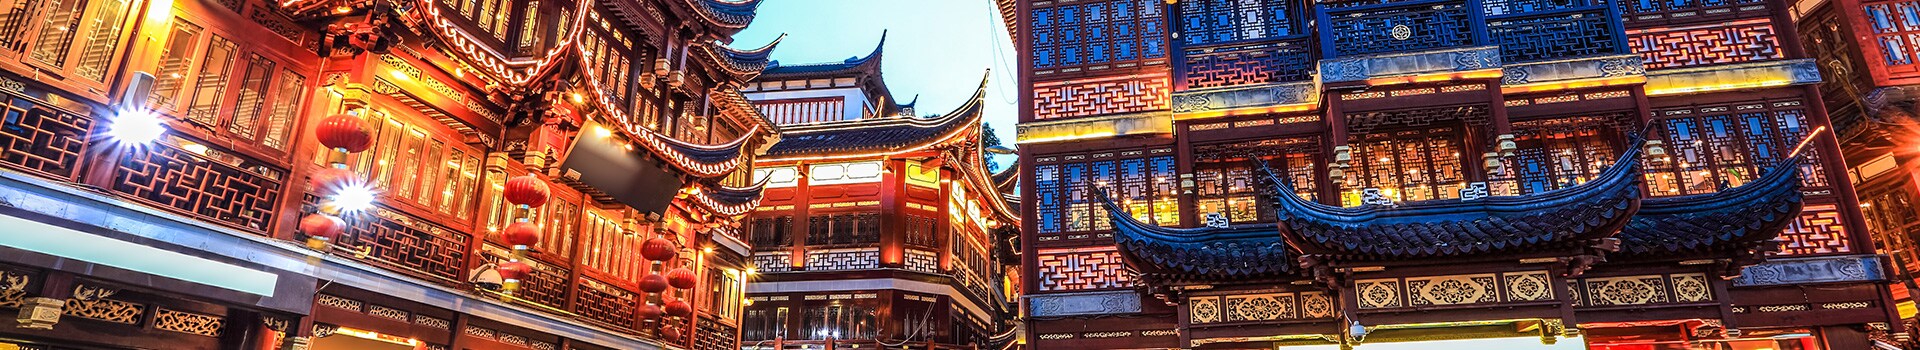 Guilin - liangjiang intl - Shanghai - hongqiao